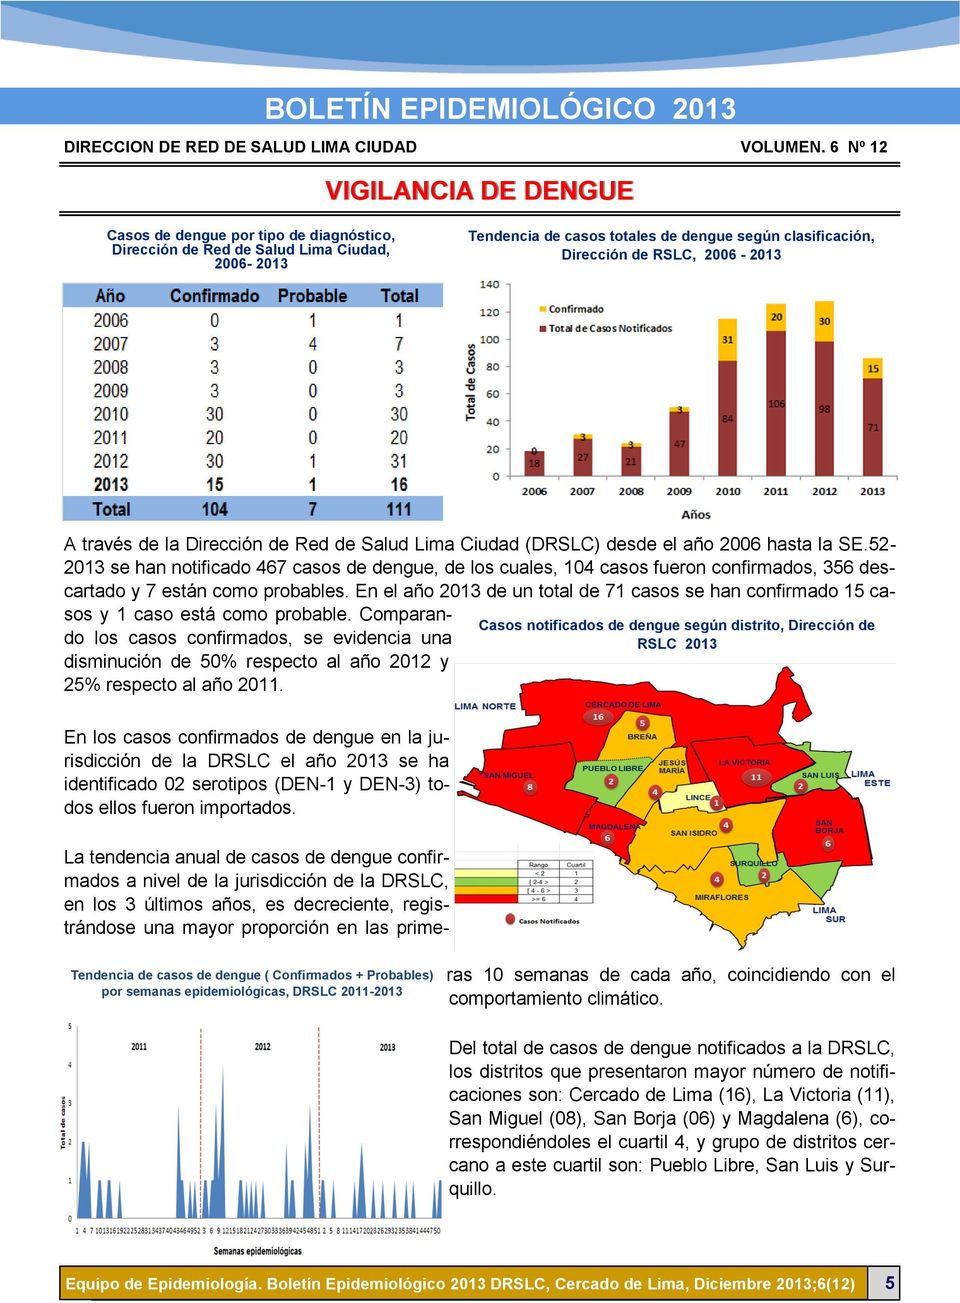 52-2013 se han notificado 467 casos de dengue, de los cuales, 104 casos fueron confirmados, 356 descartado y 7 están como probables.